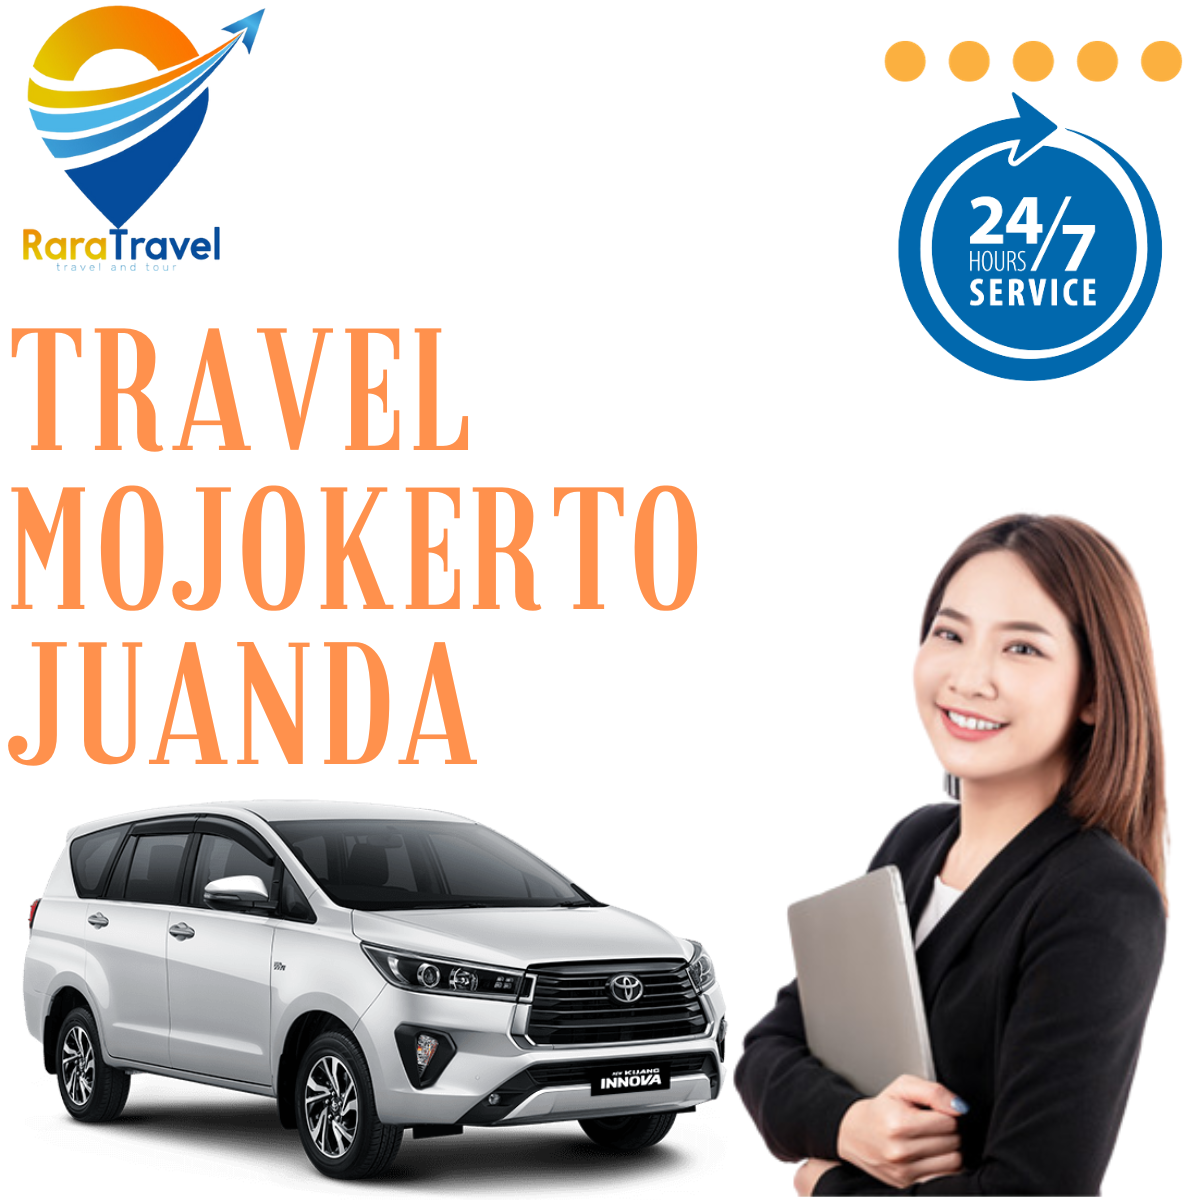 Travel Mojokerto ke Bandara Juanda Murah, Layanan PP, Fasilitas Lengkap, Harga Tiket Mulai Rp 100K